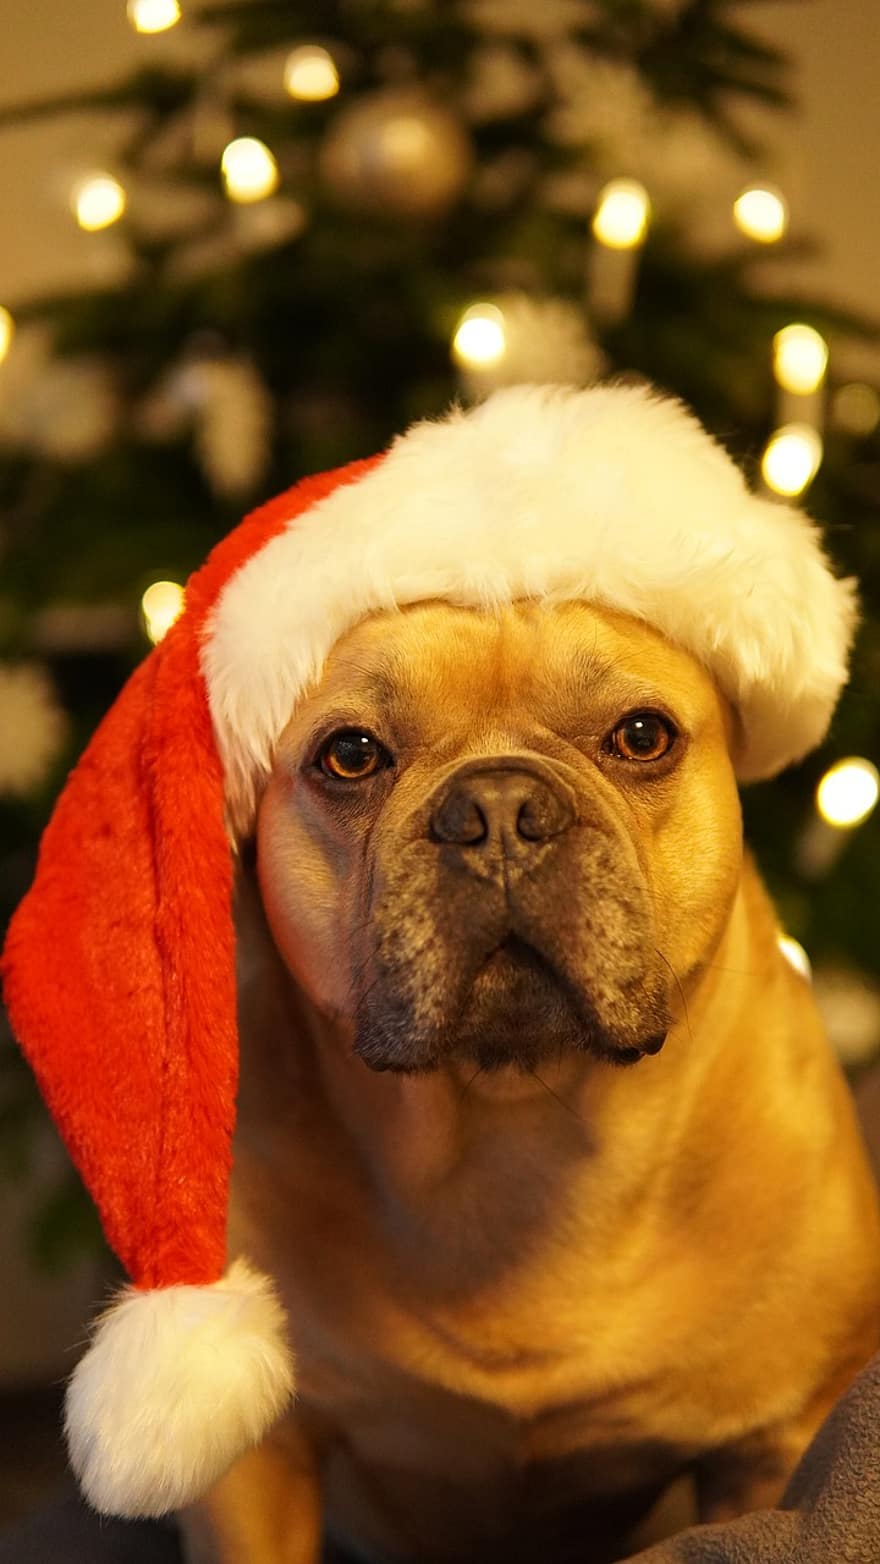 الكلب ، عيد الميلاد ، اجازة سعيدة ، بطاقة عيد الميلاد ، حفلة عيد الميلاد ، البلدغ الفرنسي ، جذاب ، سانتا قبعة ، شجرة التنوب